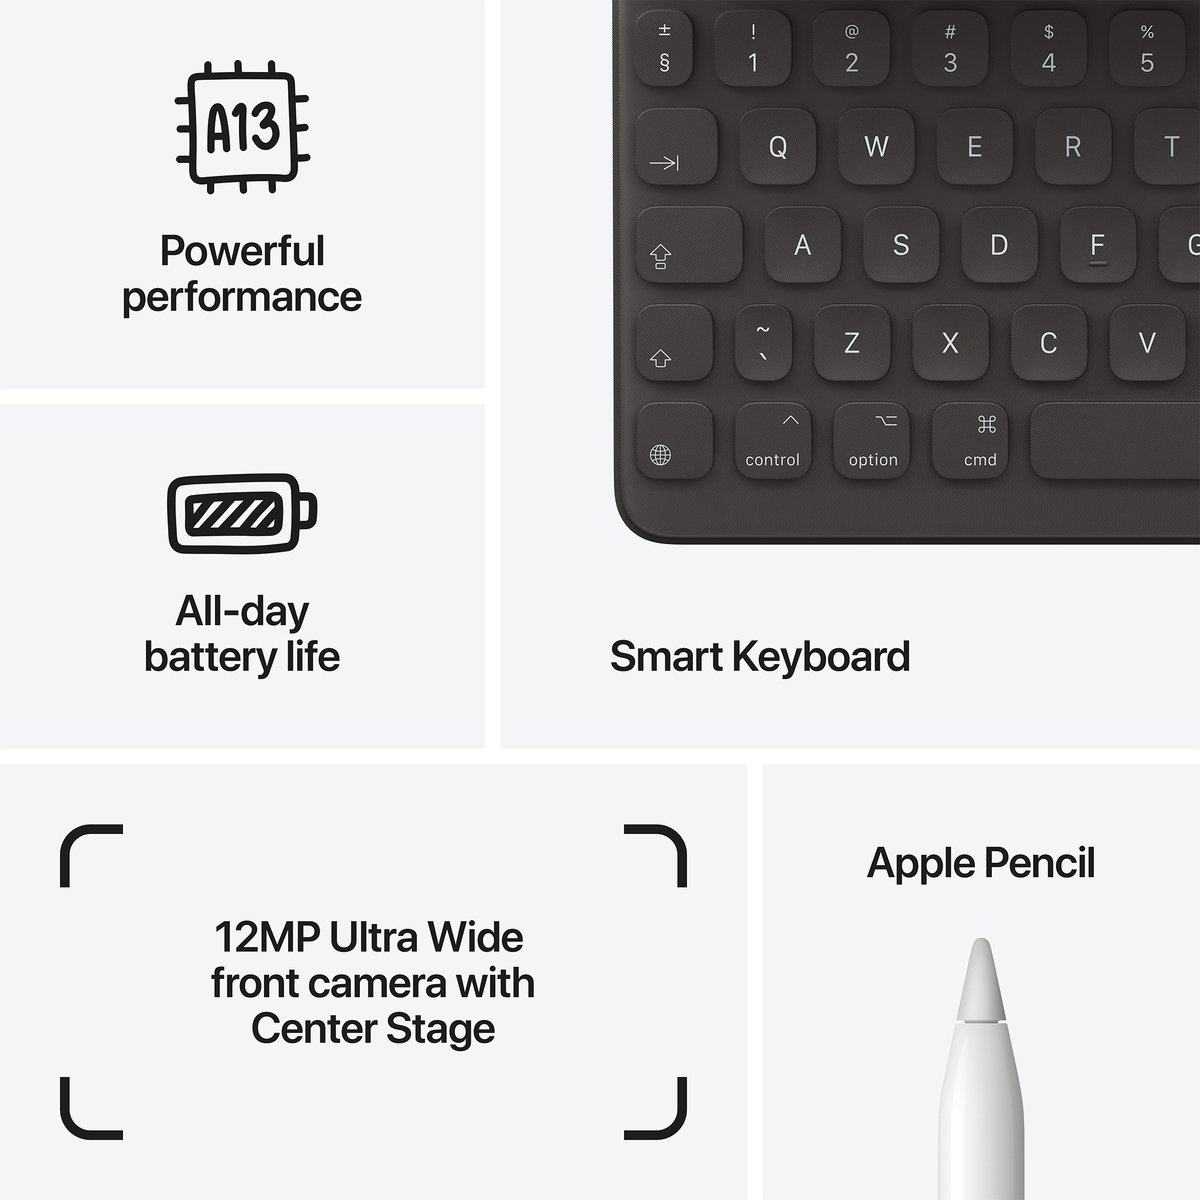 Apple iPad 2021 (9th Generation) 10.2-inch, Wi-Fi, 256GB - Grey